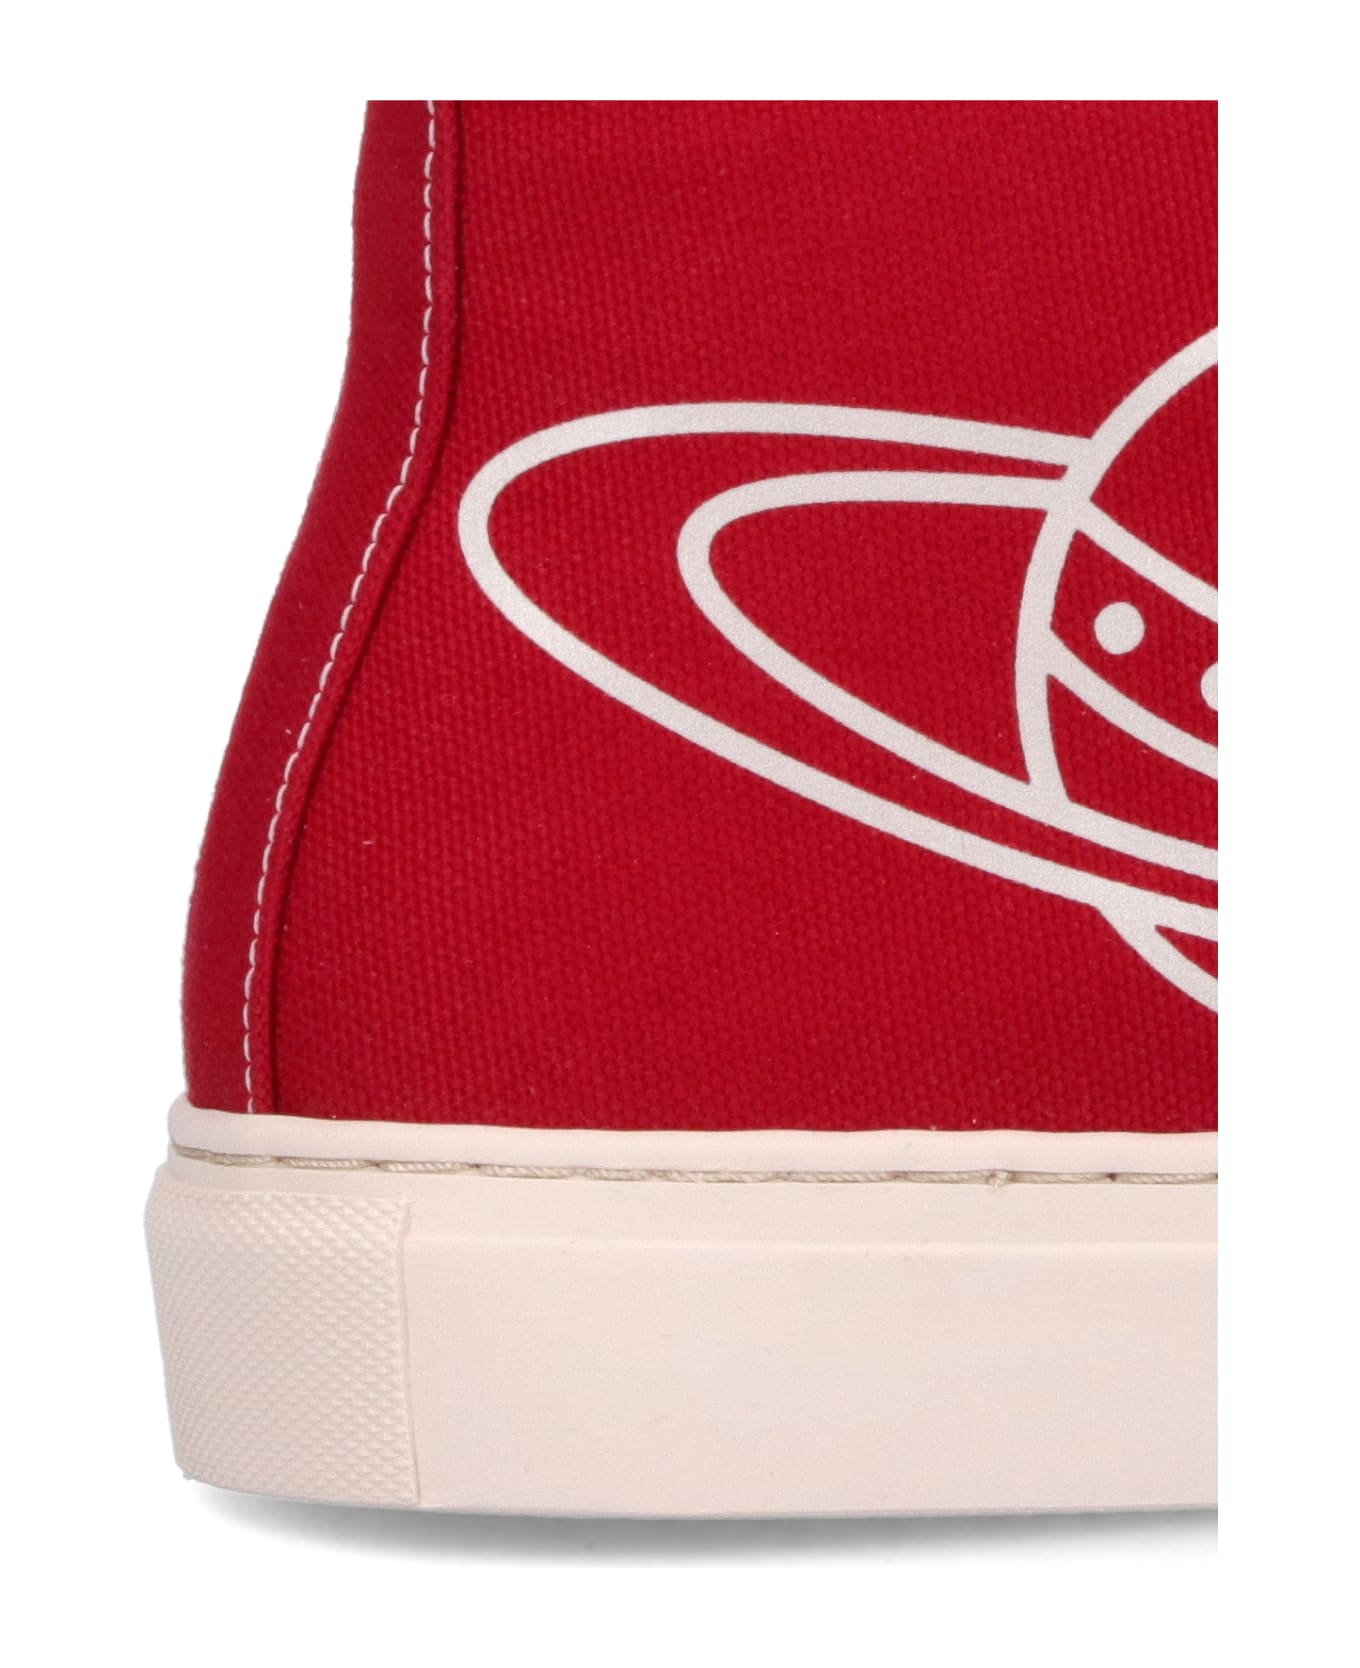 Vivienne Westwood "plimsoll High" Sneakers - Red